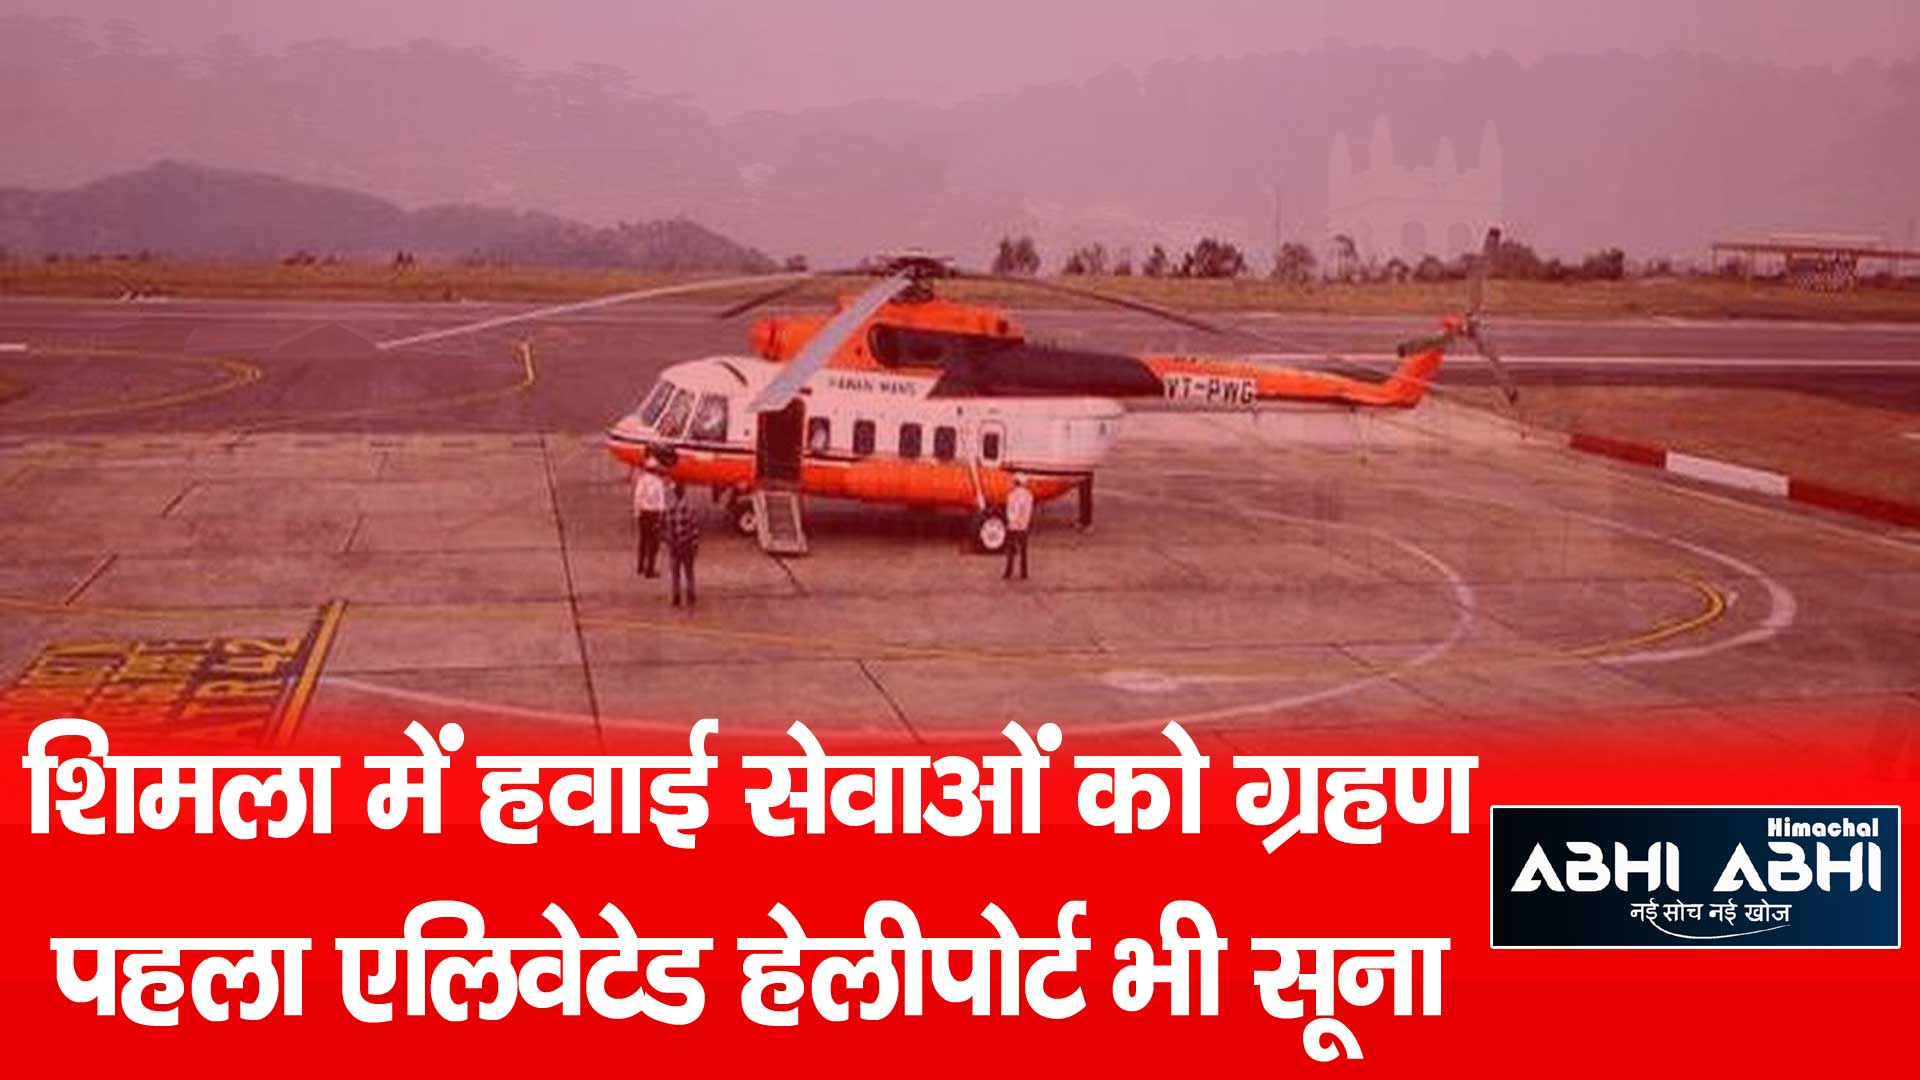 शिमला में हवाई सेवाओं को ग्रहण पहला एलिवेटेड हेलीपोर्ट भी सूना